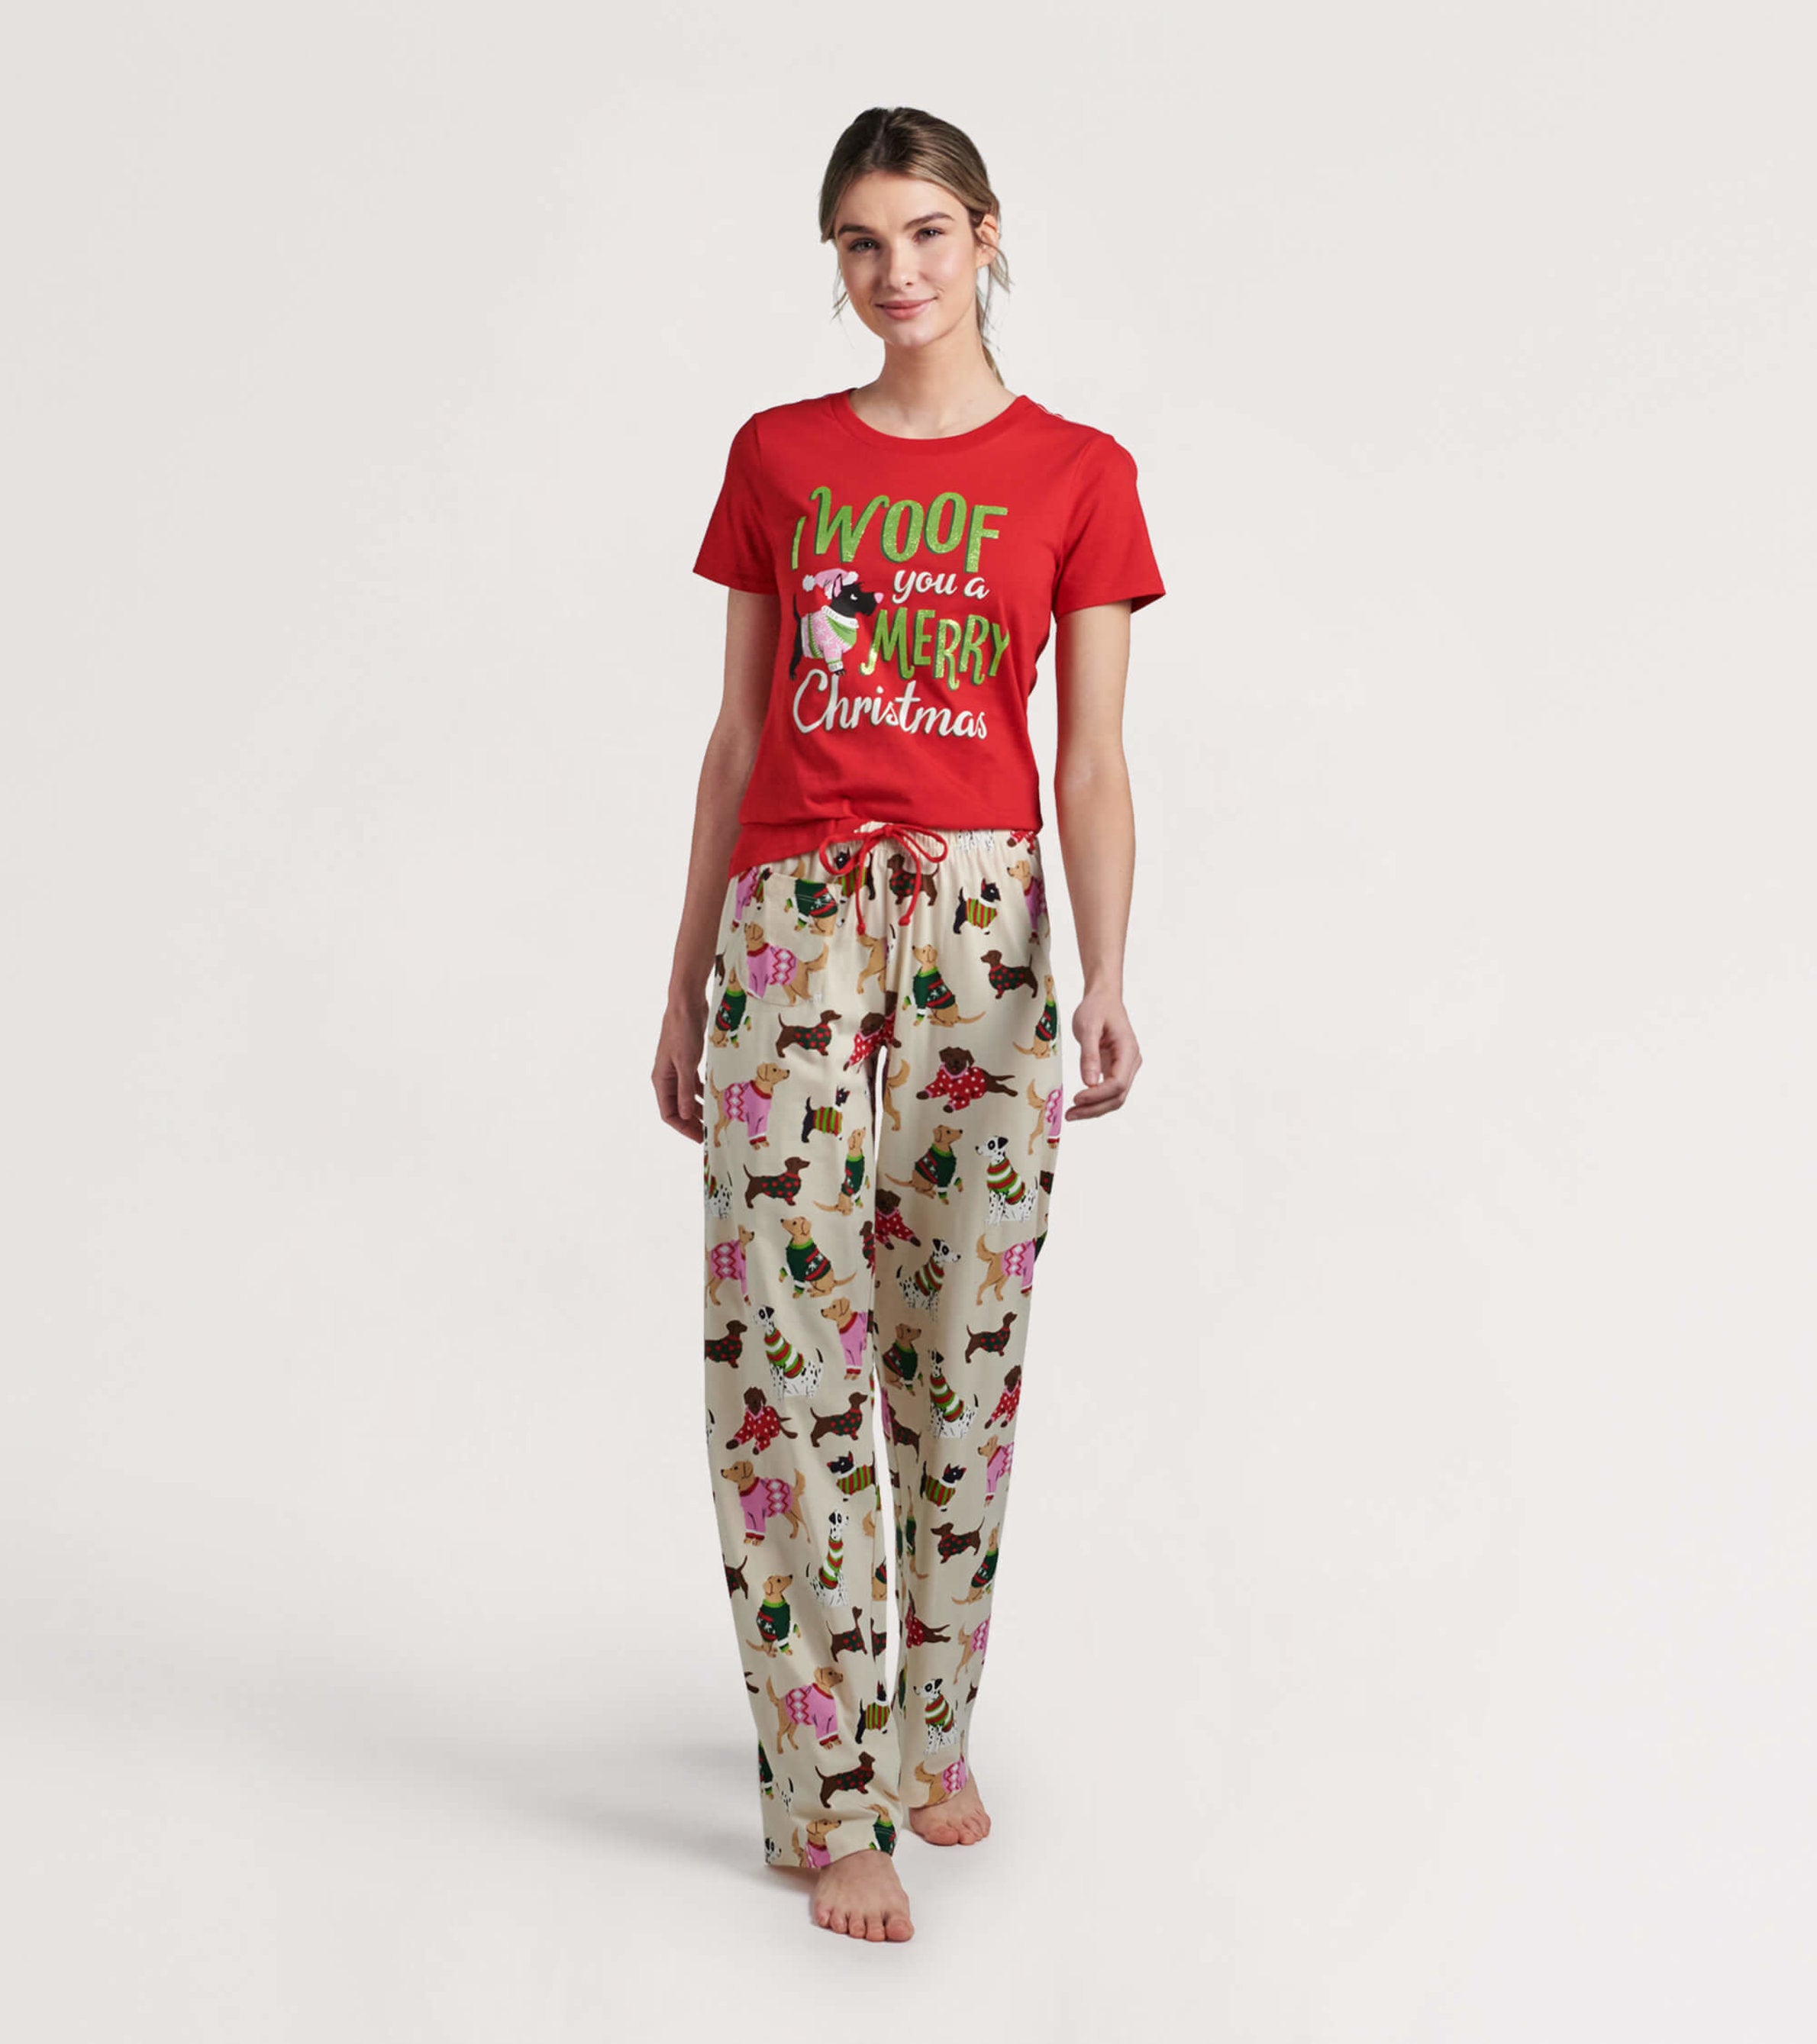 Woofing Christmas Women´s Pajama T-Shirt